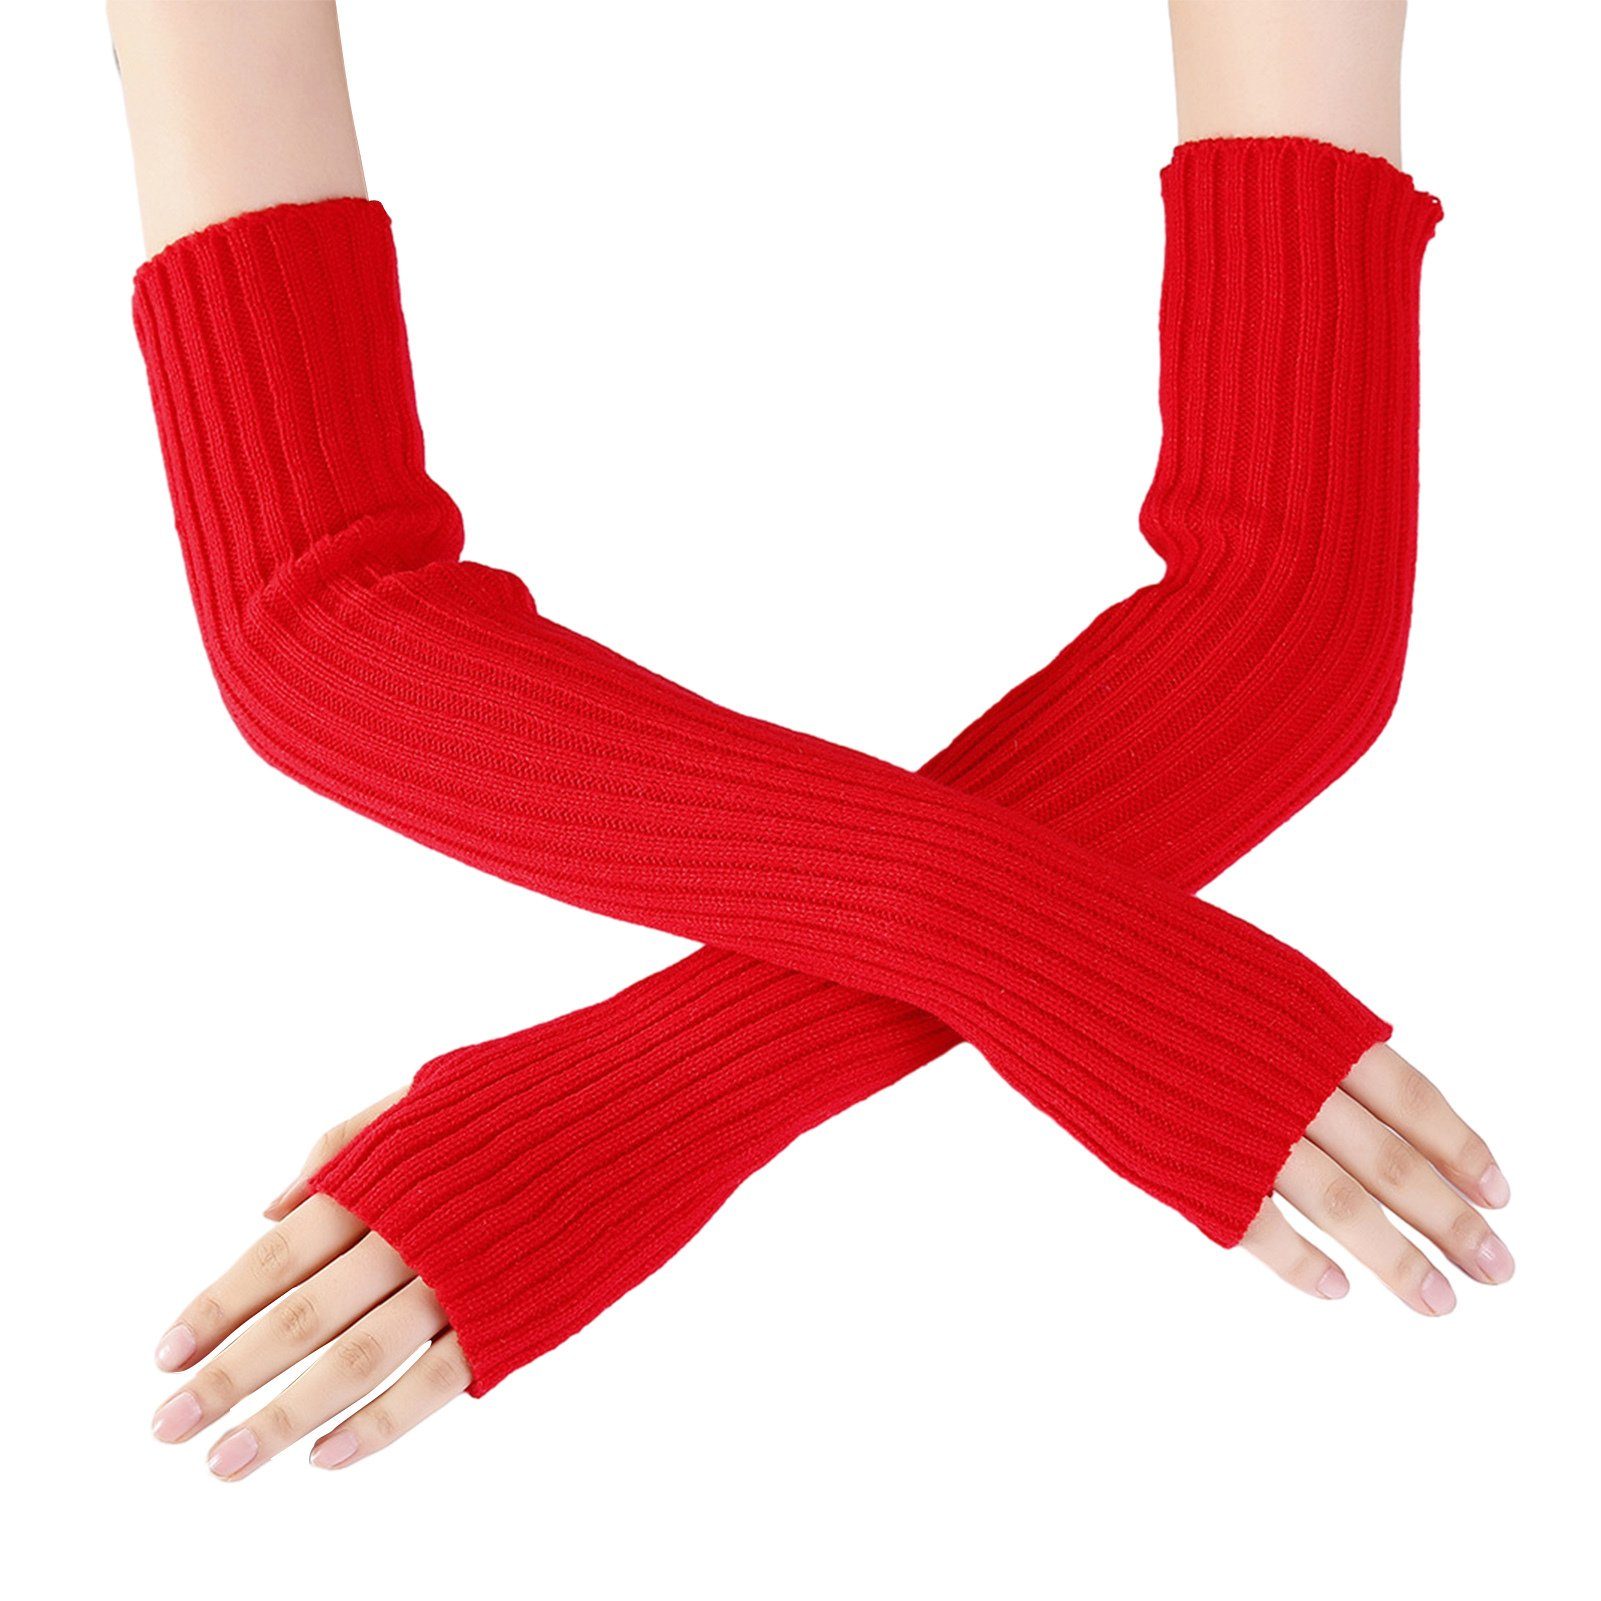 Blusmart Strickhandschuhe Winterhandschuhe Zum Warmhalten, Lange Fingerlose Handschuhe, Bequeme Strickhandschuhe Rot